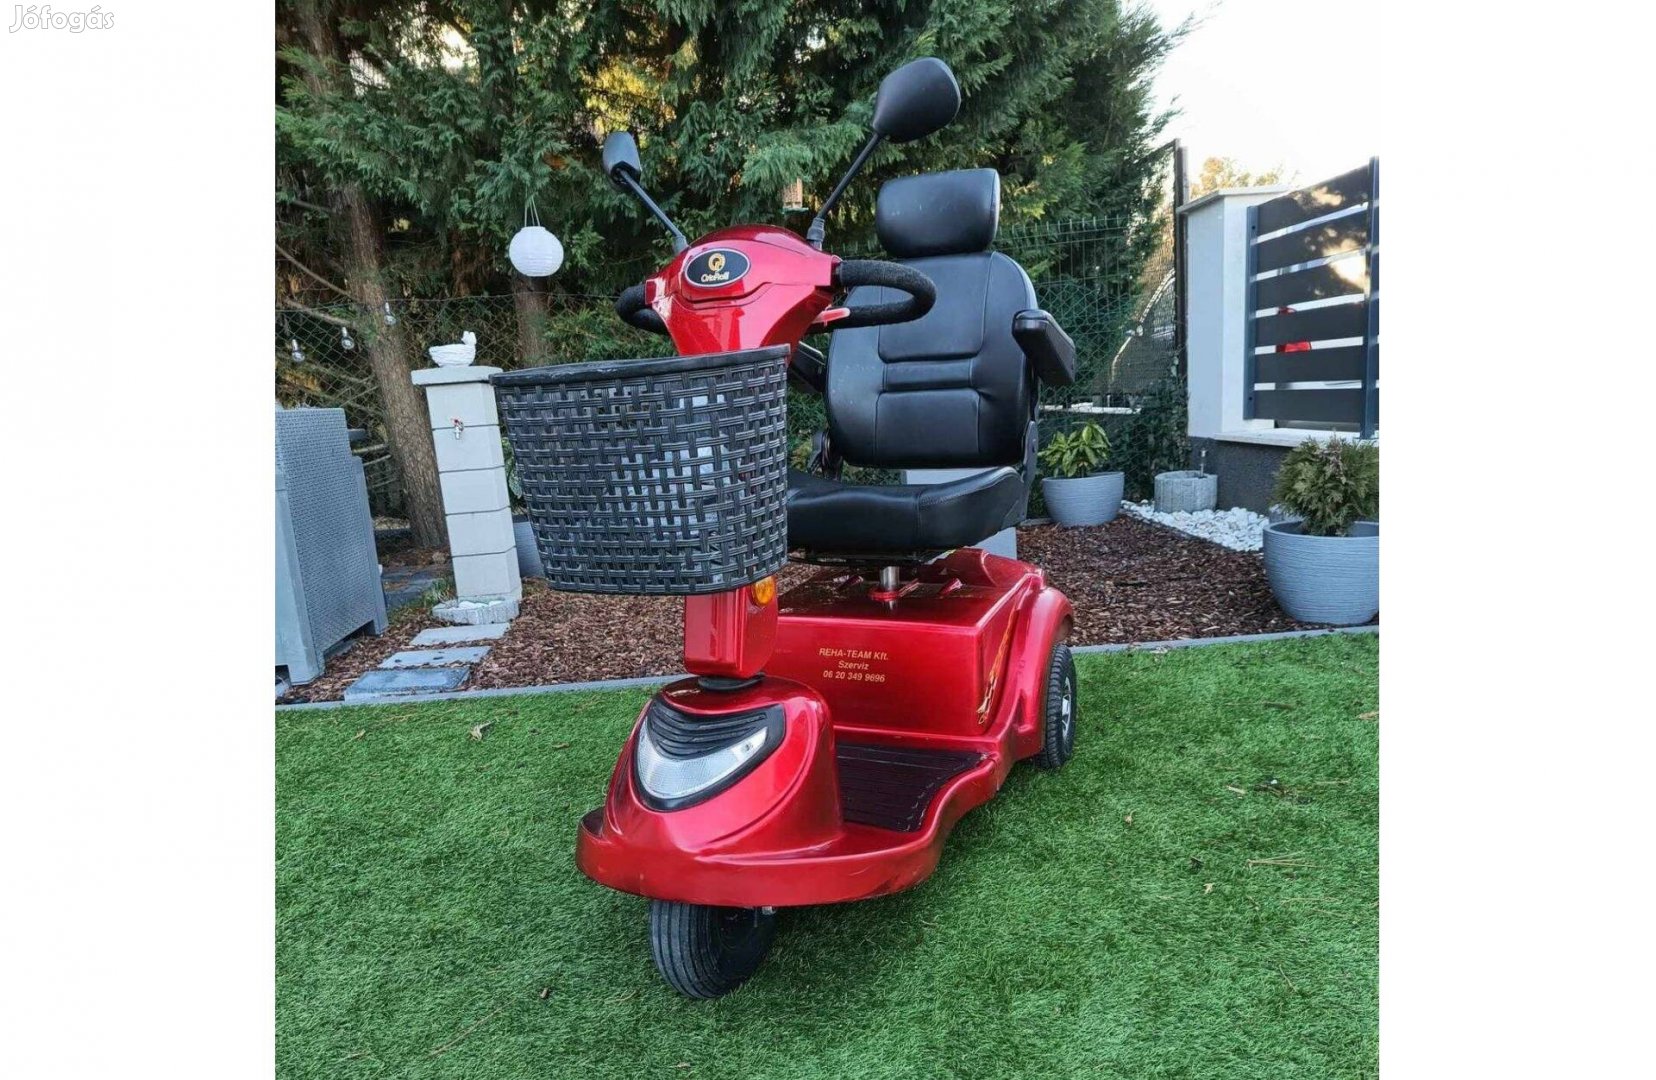 Garancia házhozsz elektromos moped rokkantkocsi rokkant kocsi rehab